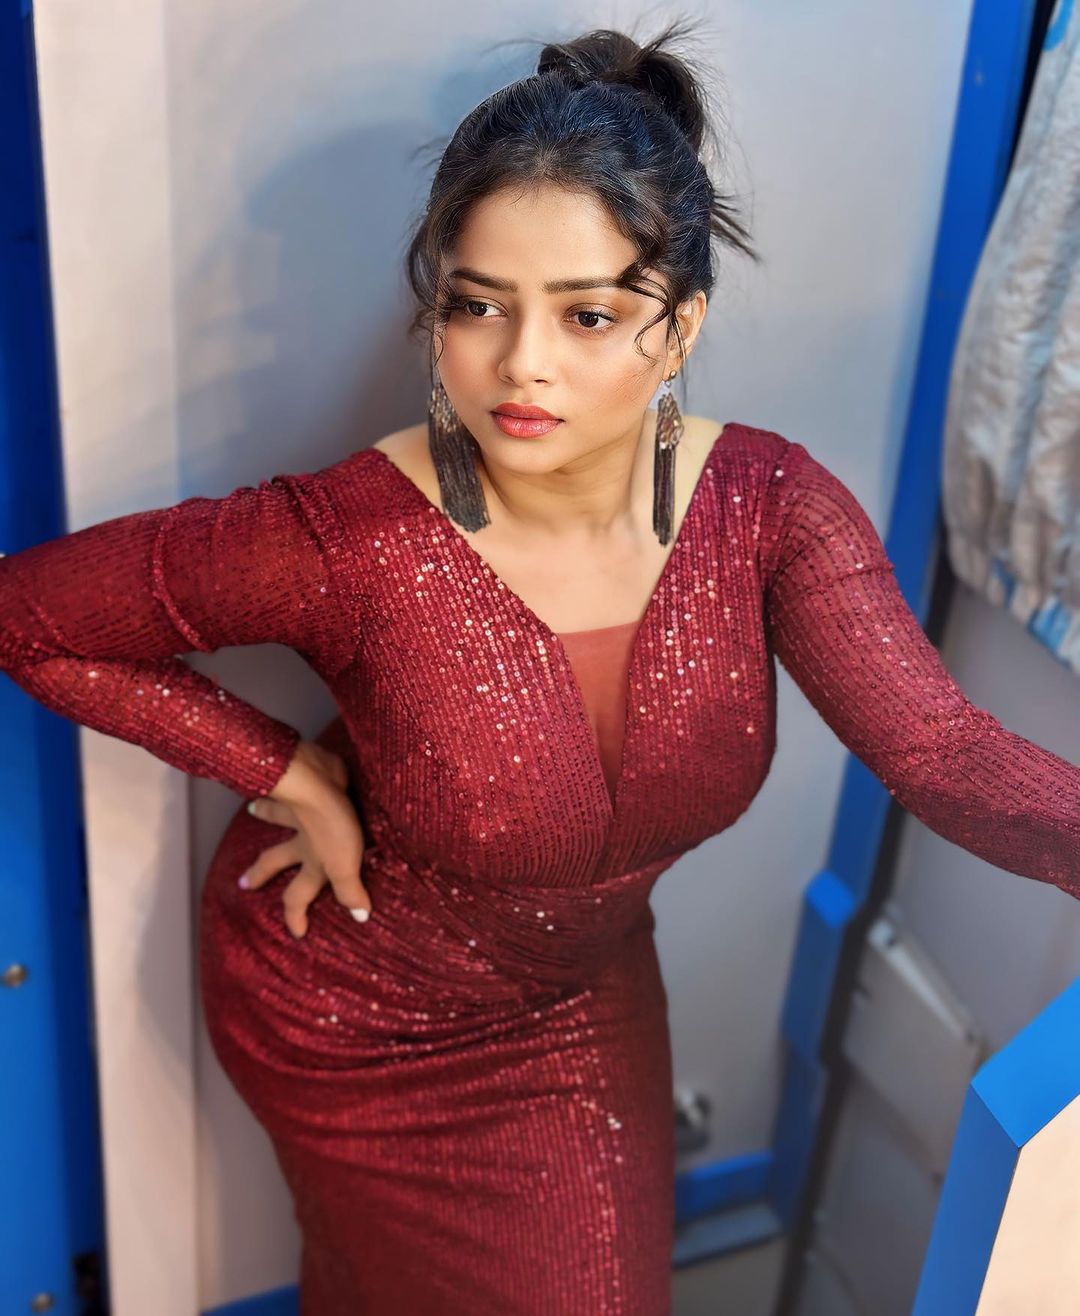 Shivali parab hot lady caption sai tamhankar